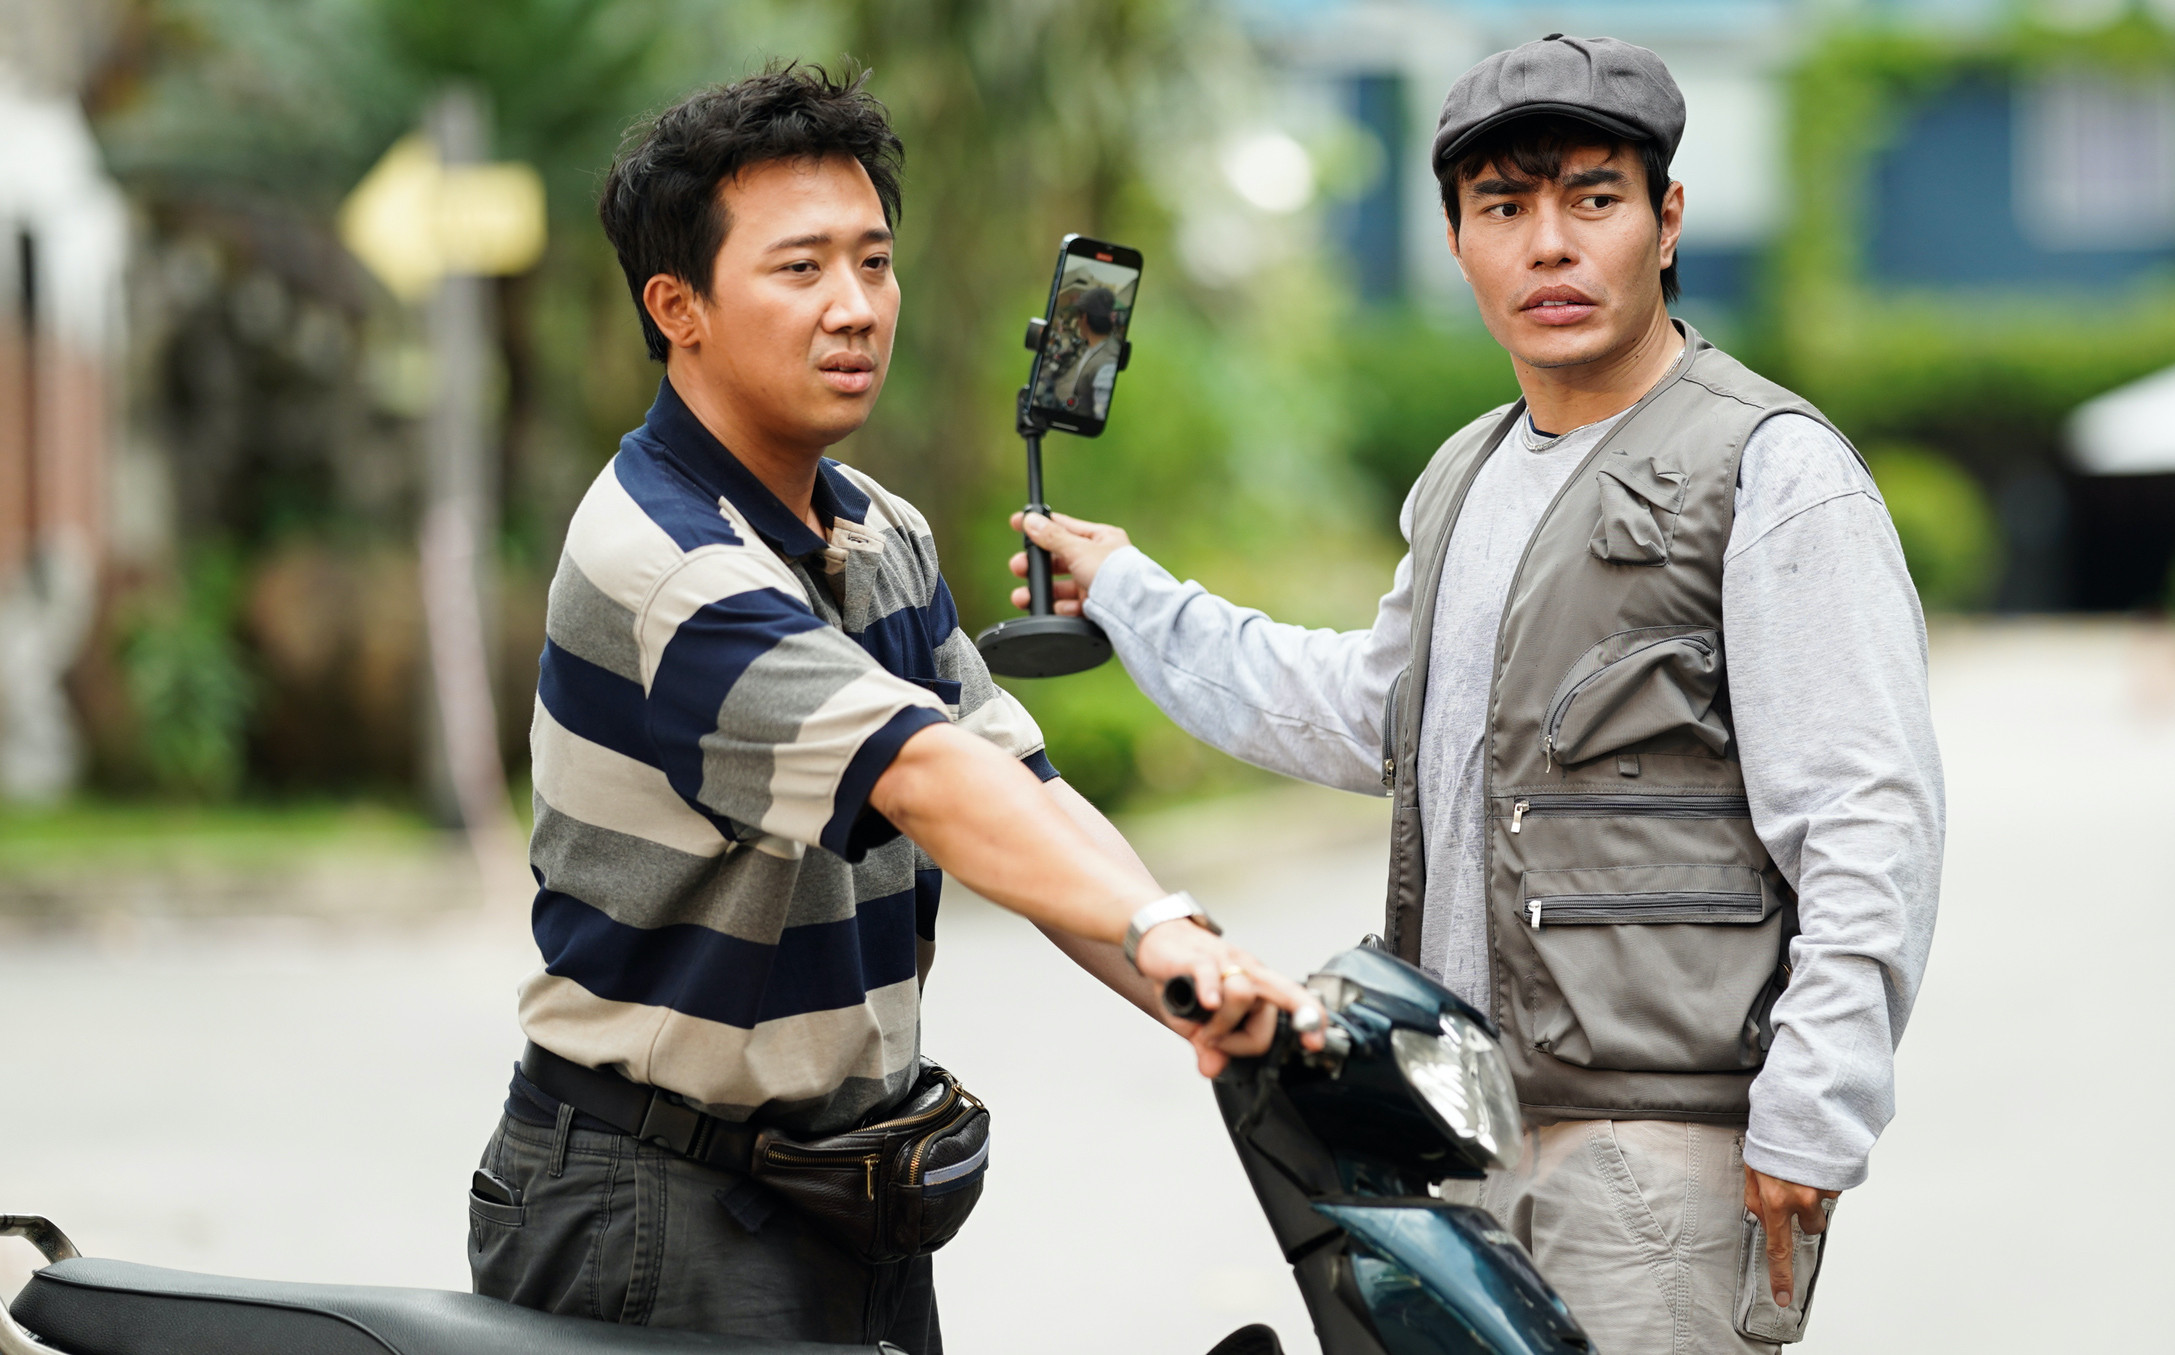 oscar film 2023 trailer Trang web cờ bạc trực tuyến lớn nhất Việt